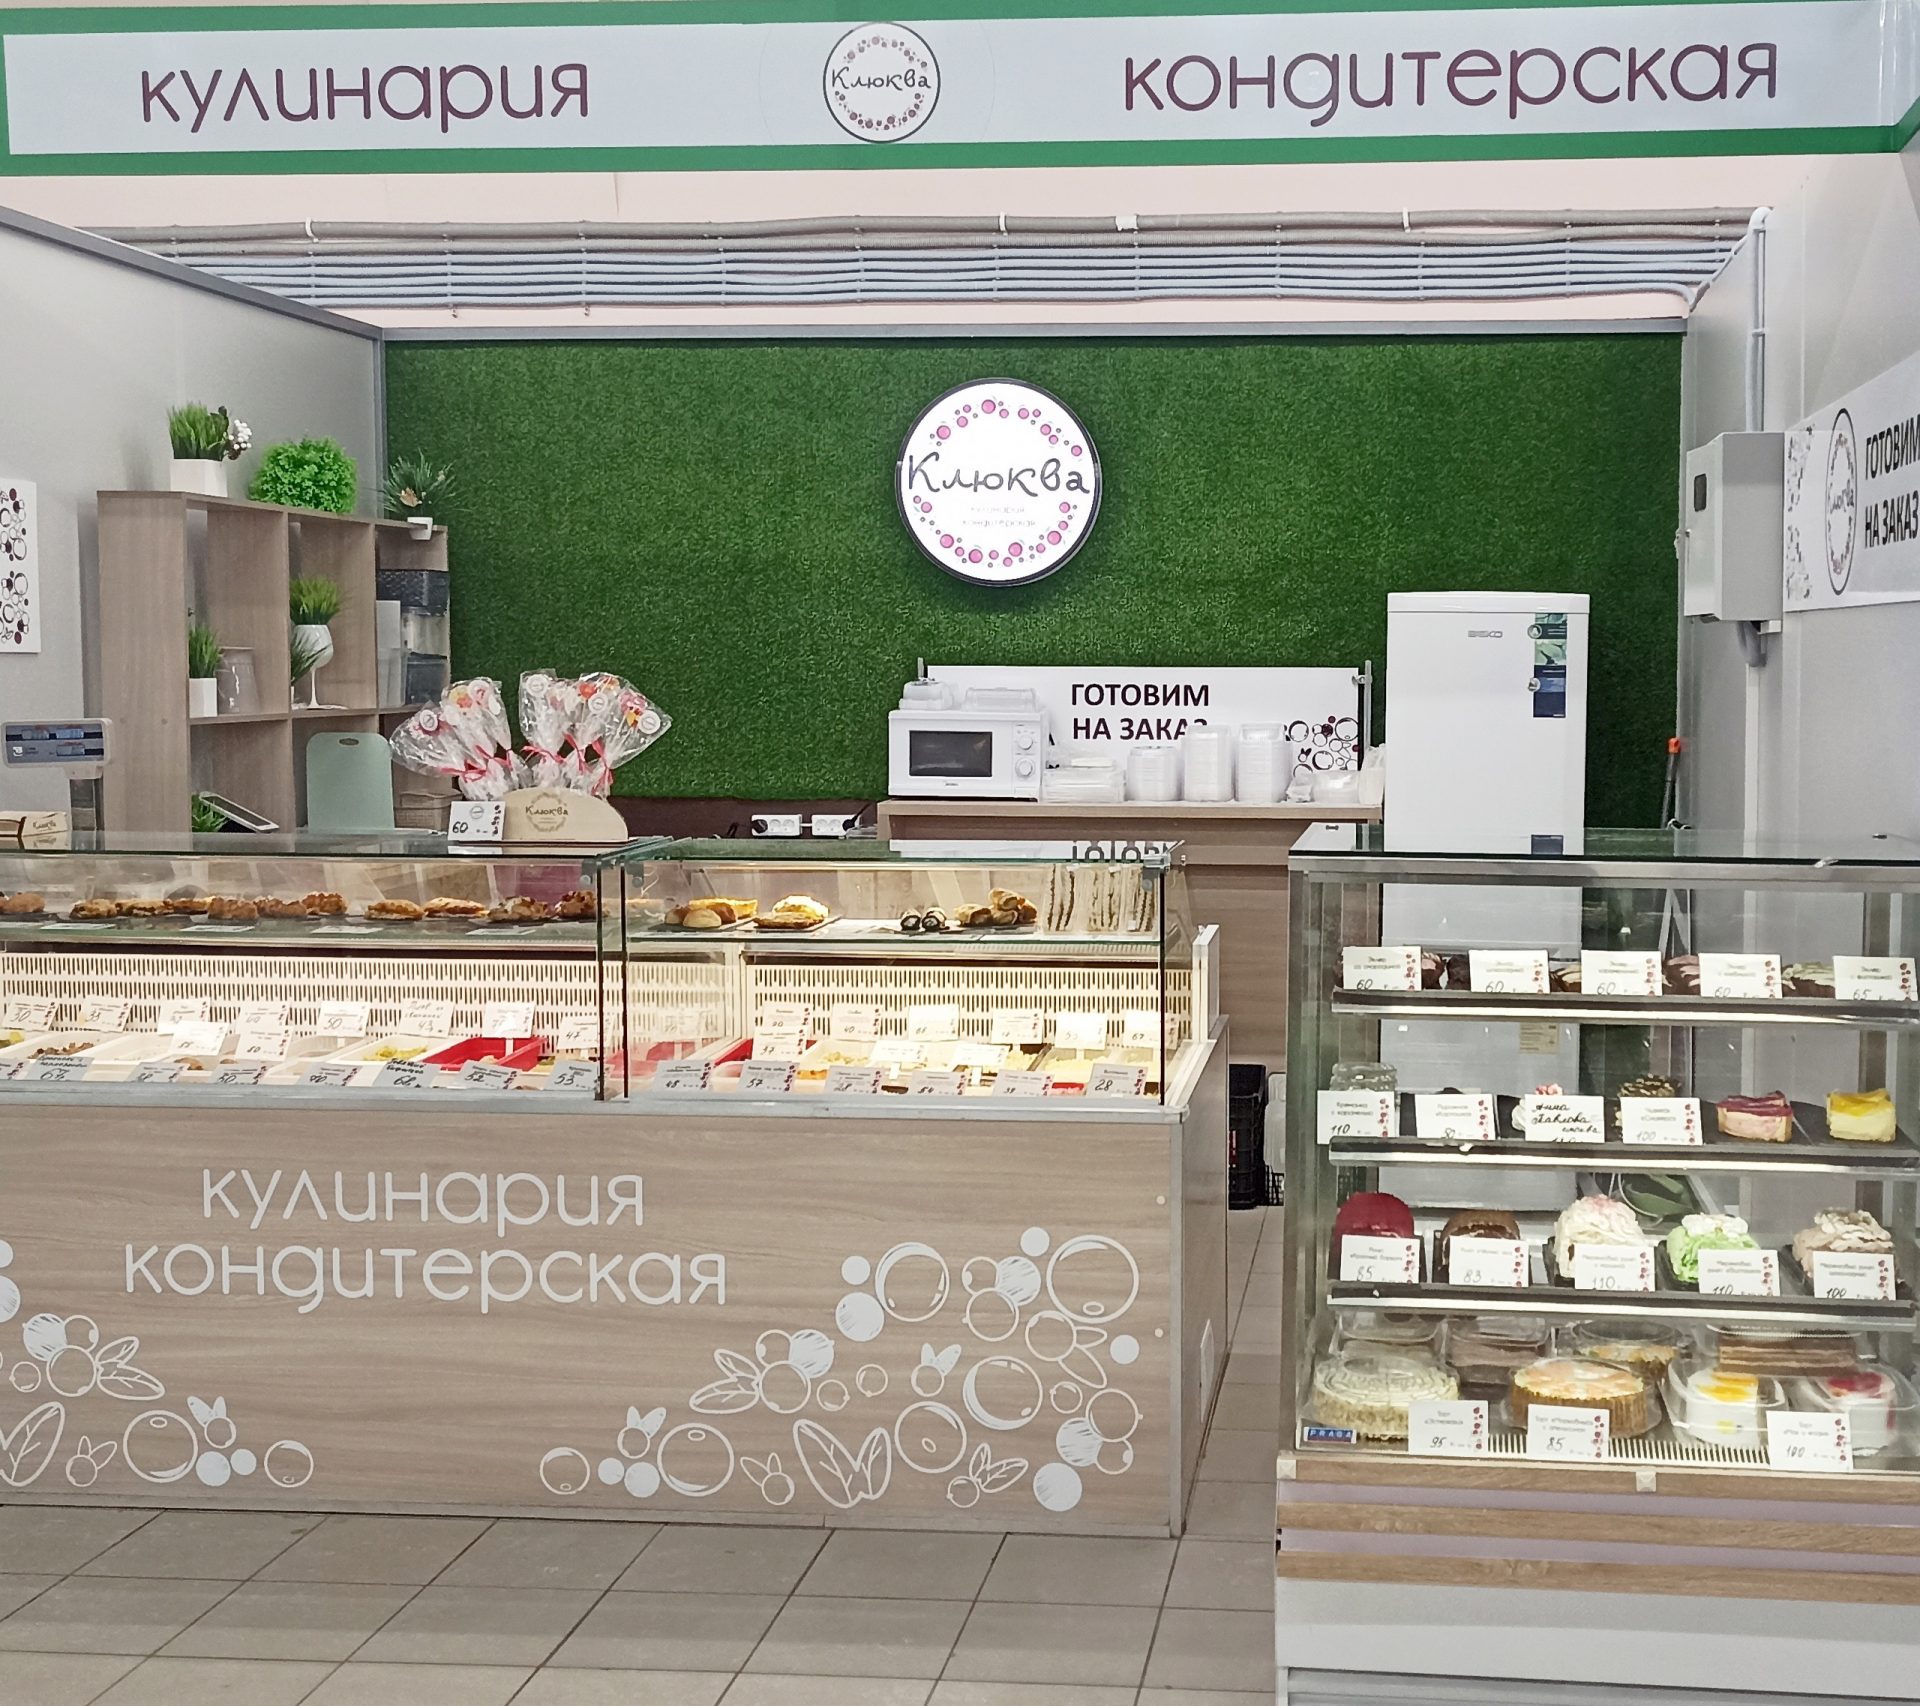 Рязанская кондитерская «Клюква» будет производить больше готовой еды благодаря оптимизации процессов